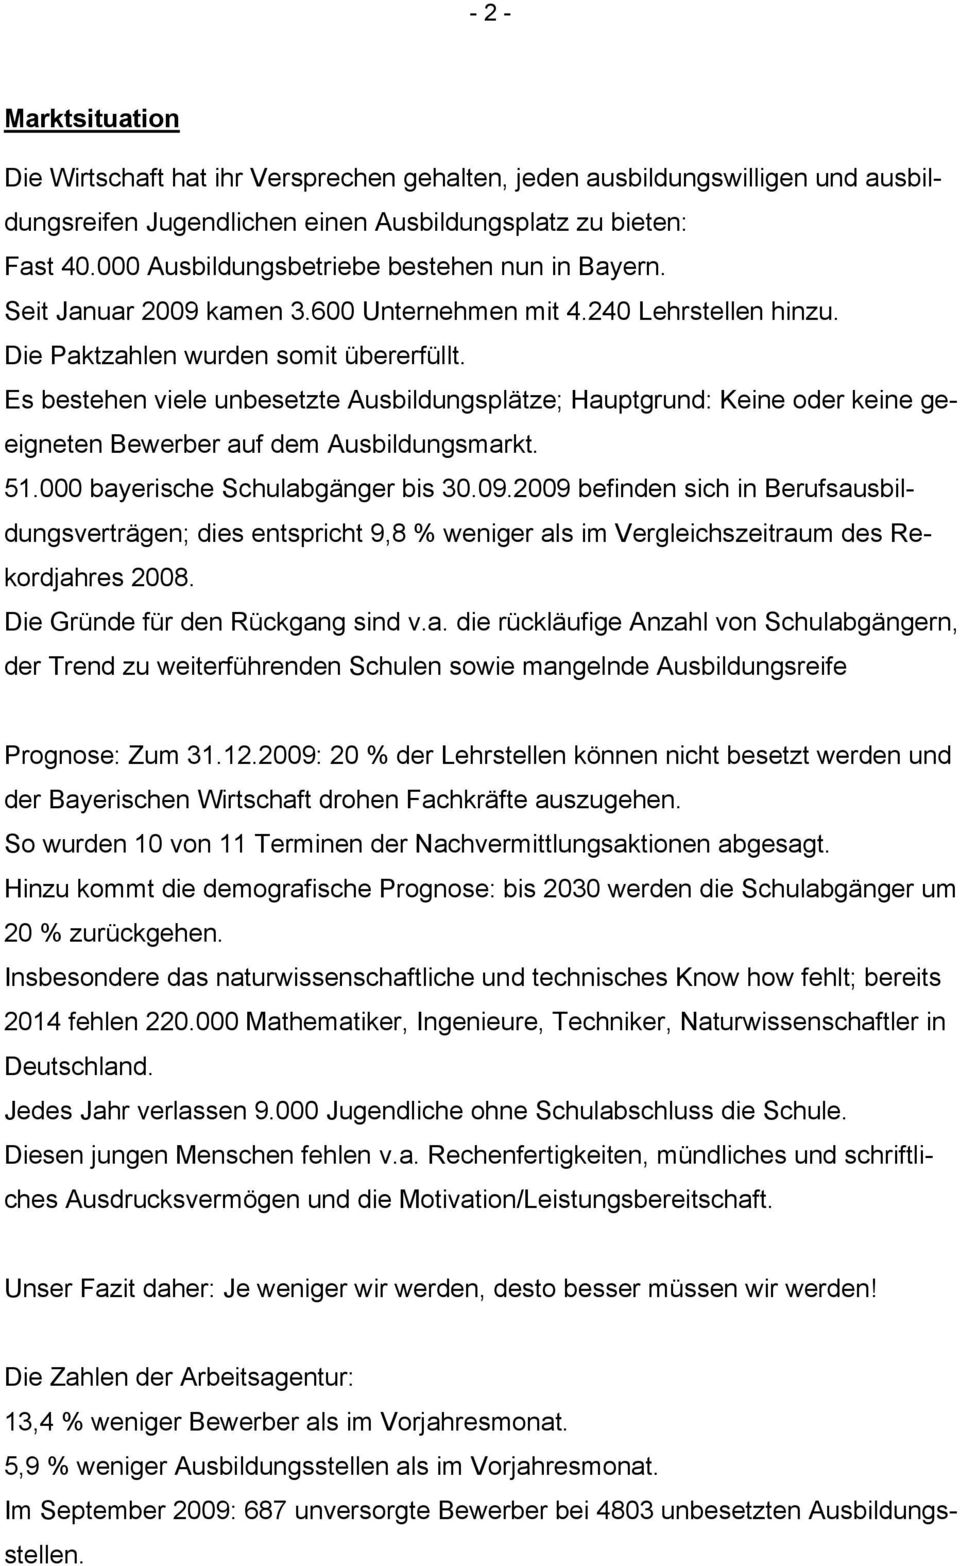 Es bestehen viele unbesetzte Ausbildungsplätze; Hauptgrund: Keine oder keine geeigneten Bewerber auf dem Ausbildungsmarkt. 51.000 bayerische Schulabgänger bis 30.09.